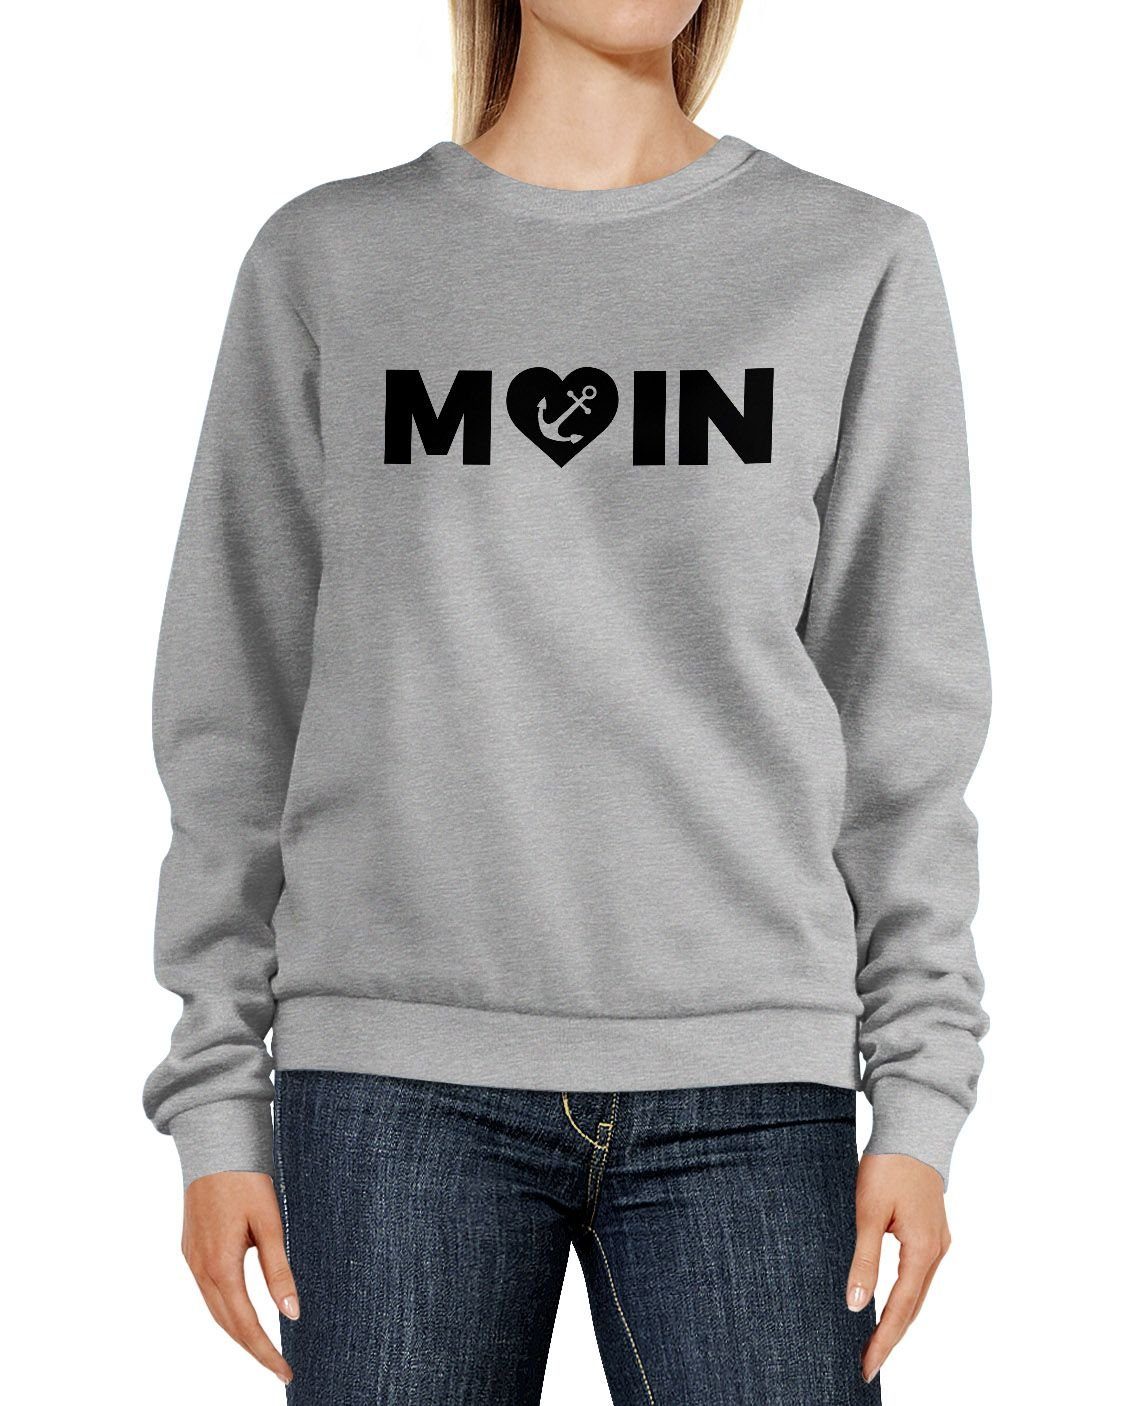 MoonWorks Sweatshirt Sweatshirt Damen Aufdruck Moin Herz mit Anker Rundhals-Pullover Pulli Sweater Moonworks® grau